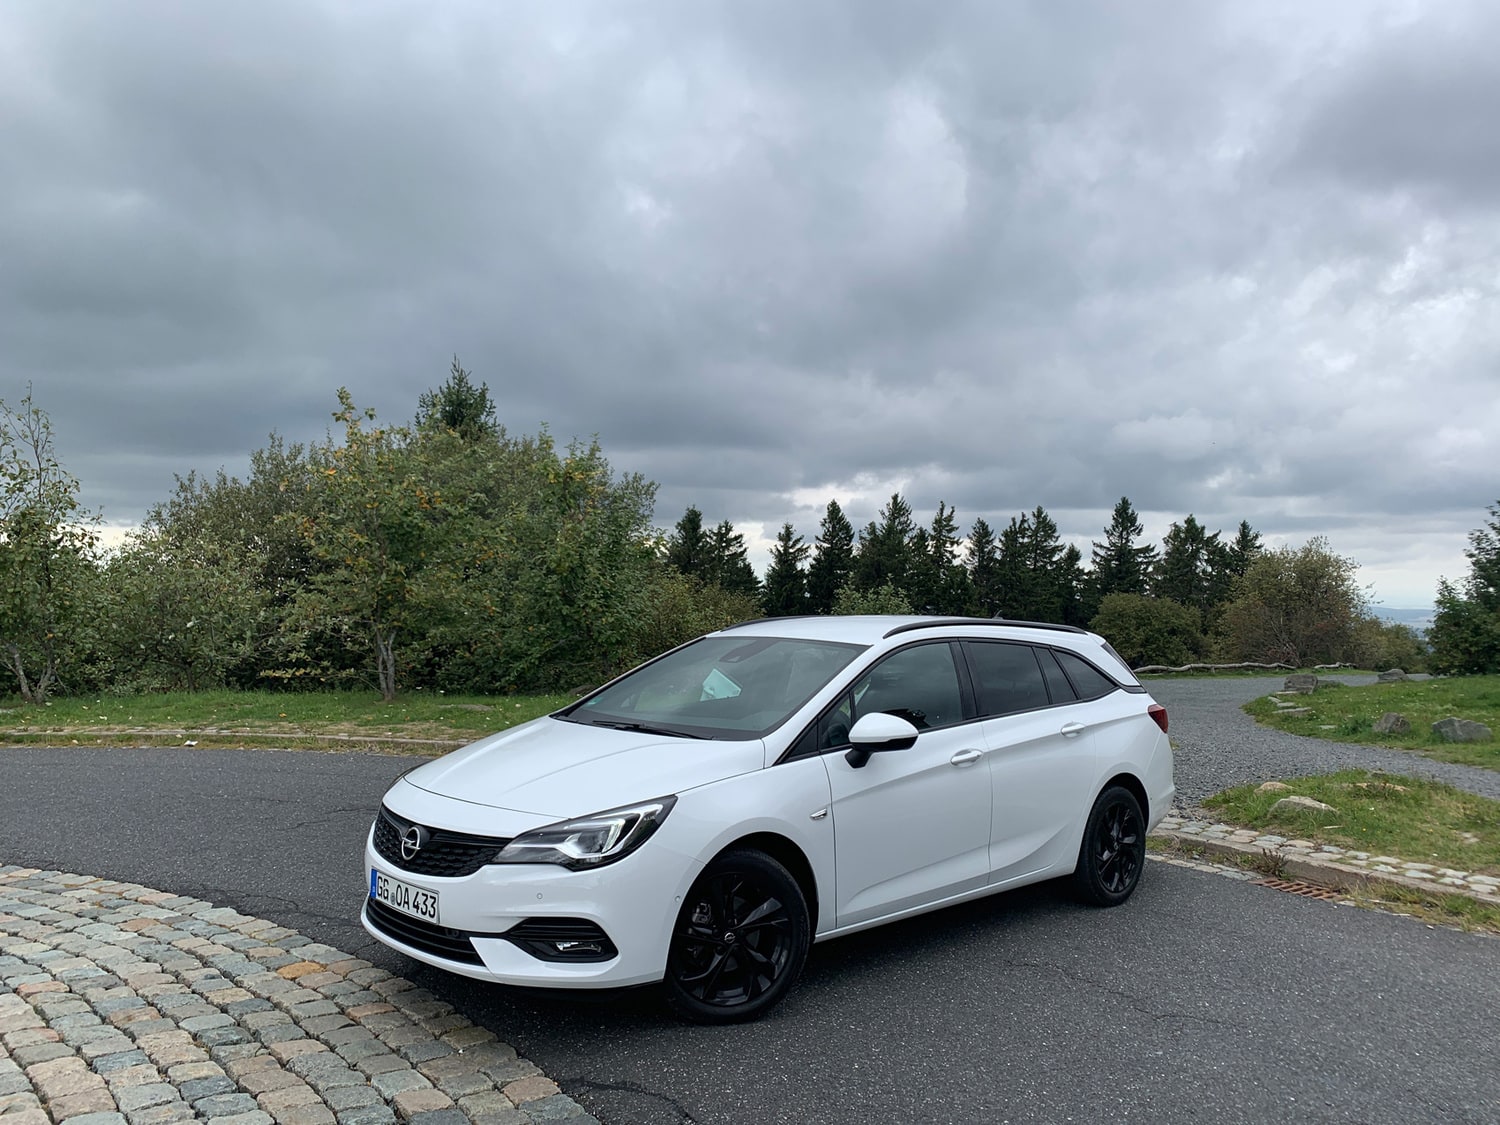 Kort test av nye Opel Astra (sept 2019) - Nybiltester